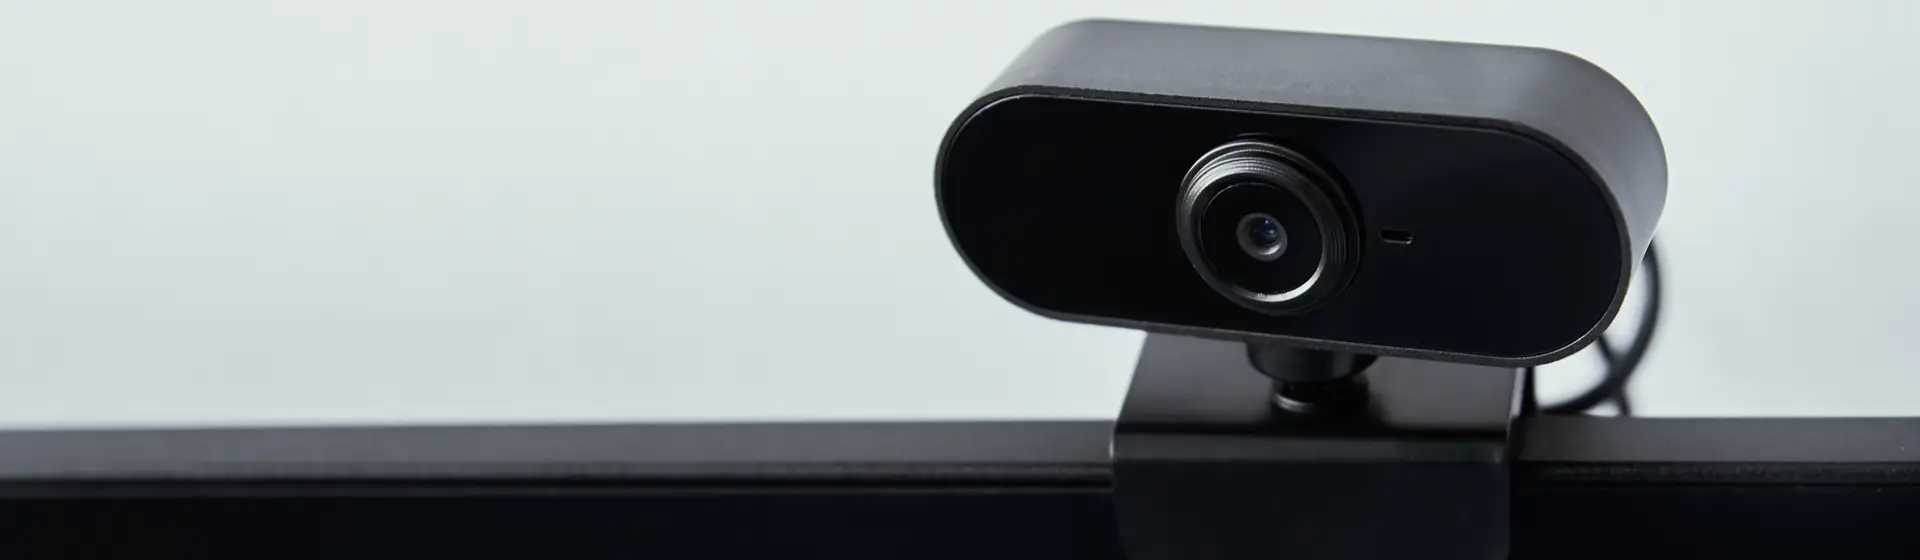 Webcam com microfone para PC: os melhores 10 modelos para comprar